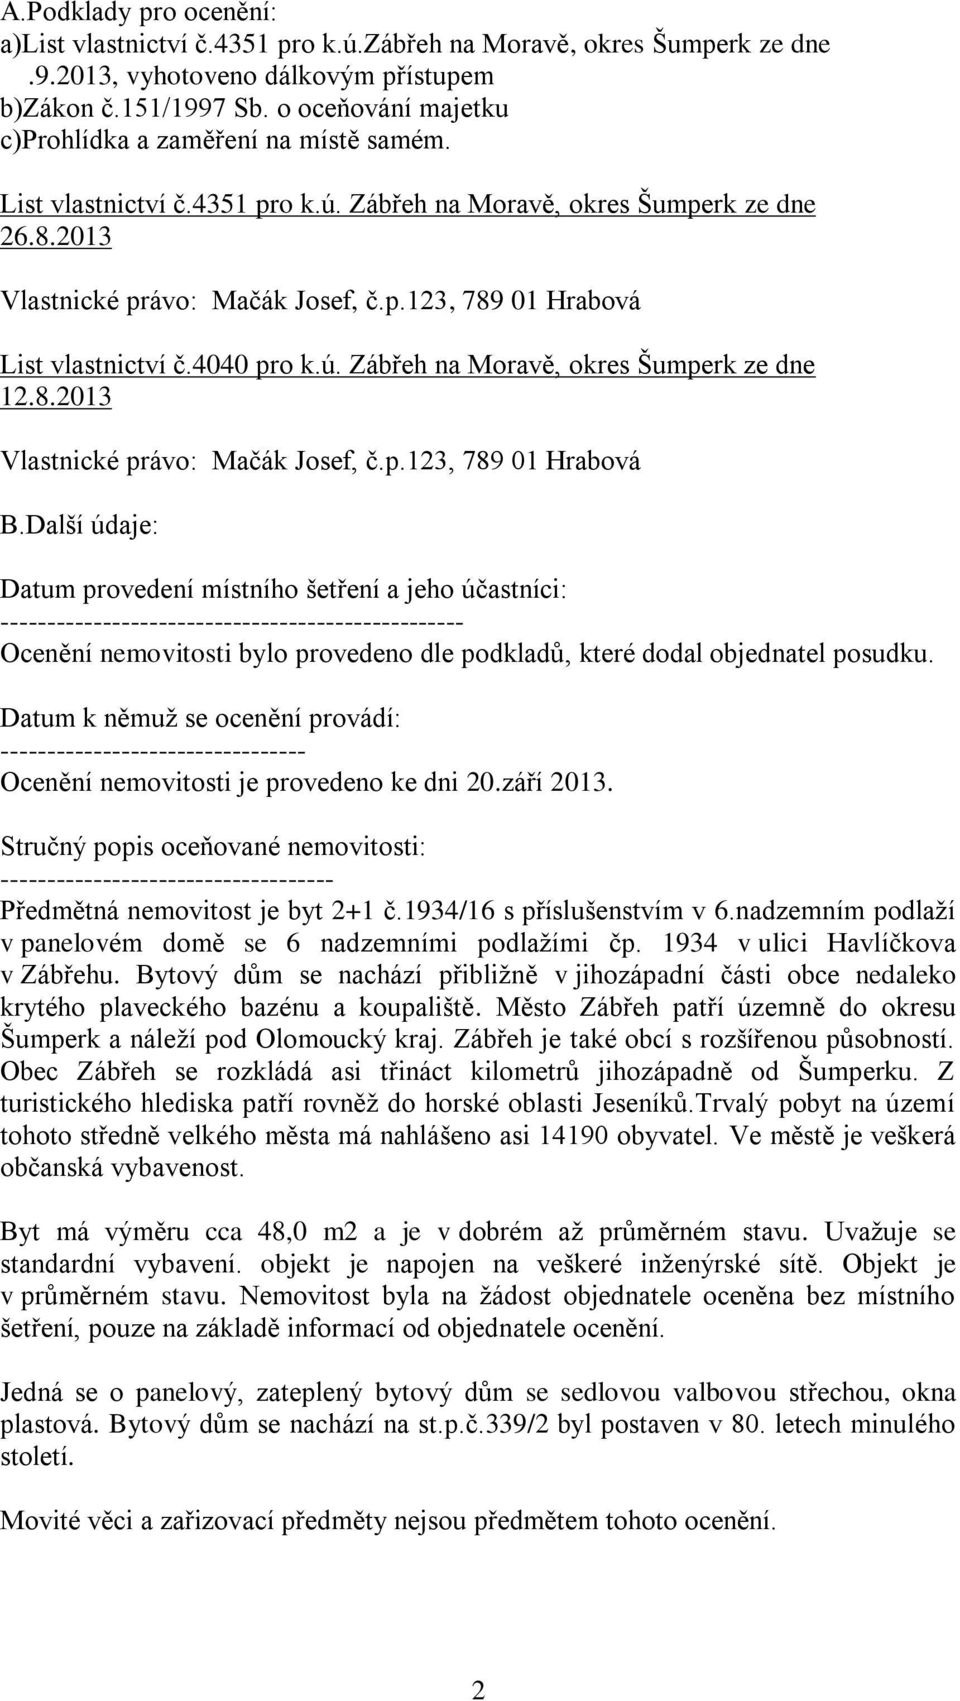 4040 pro k.ú. Zábřeh na Moravě, okres Šumperk ze dne 12.8.2013 Vlastnické právo: Mačák Josef, č.p.123, 789 01 Hrabová B.